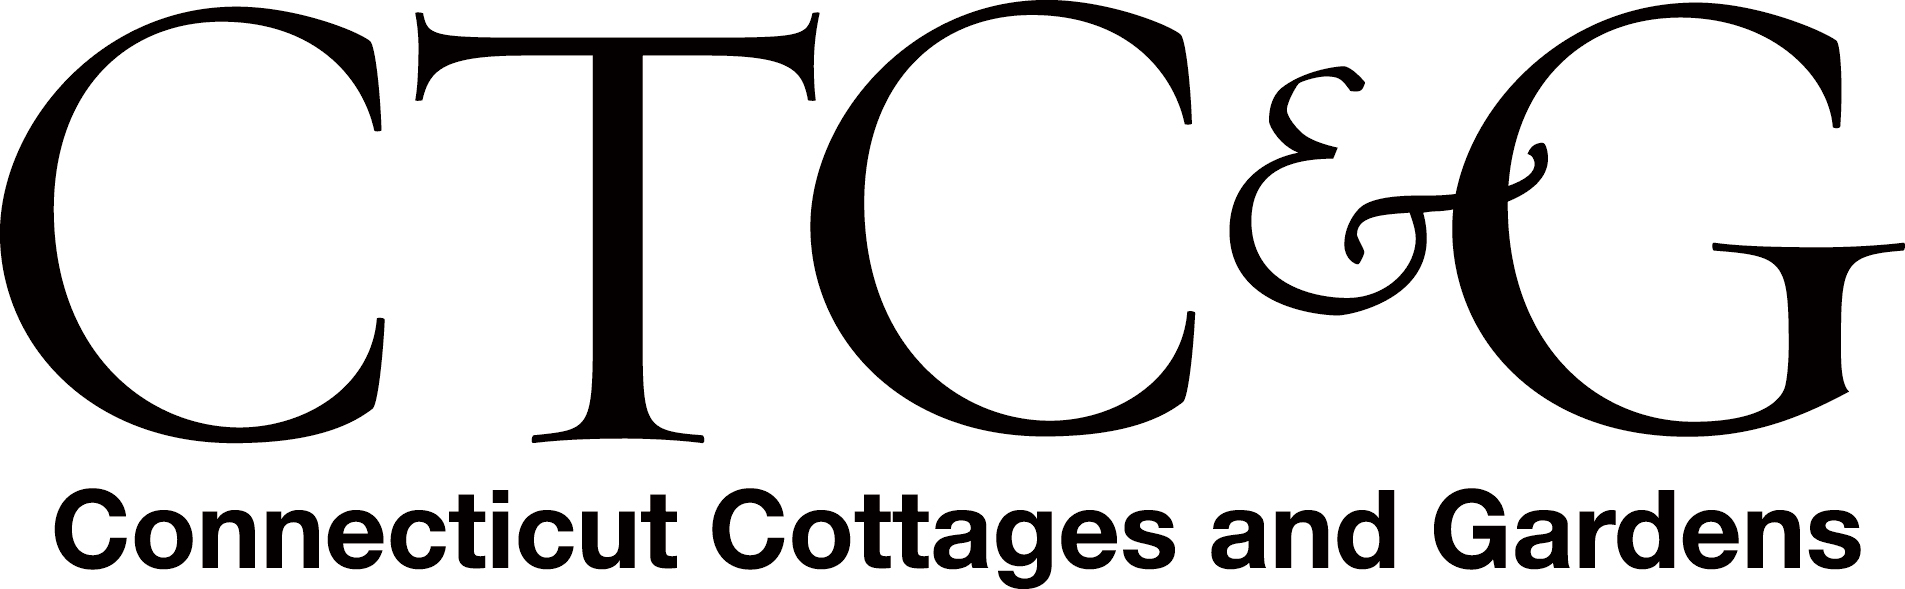 Connecticut Cottages & Gardens